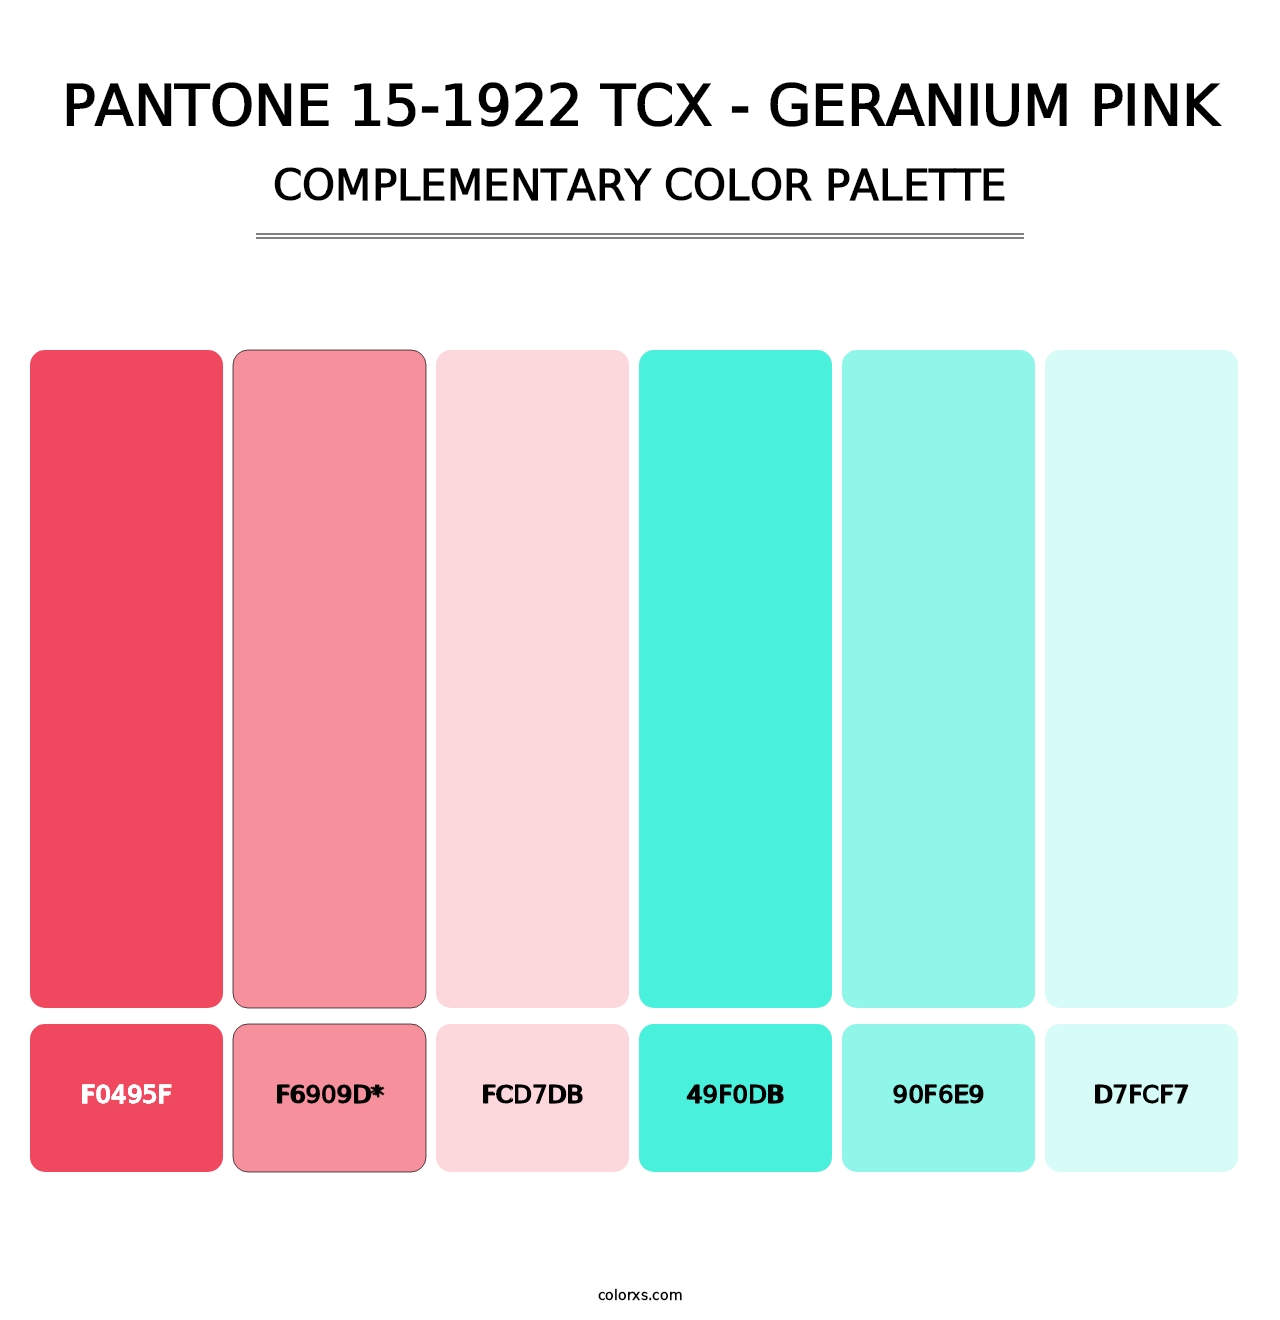 PANTONE 15-1922 TCX - Geranium Pink - Complementary Color Palette